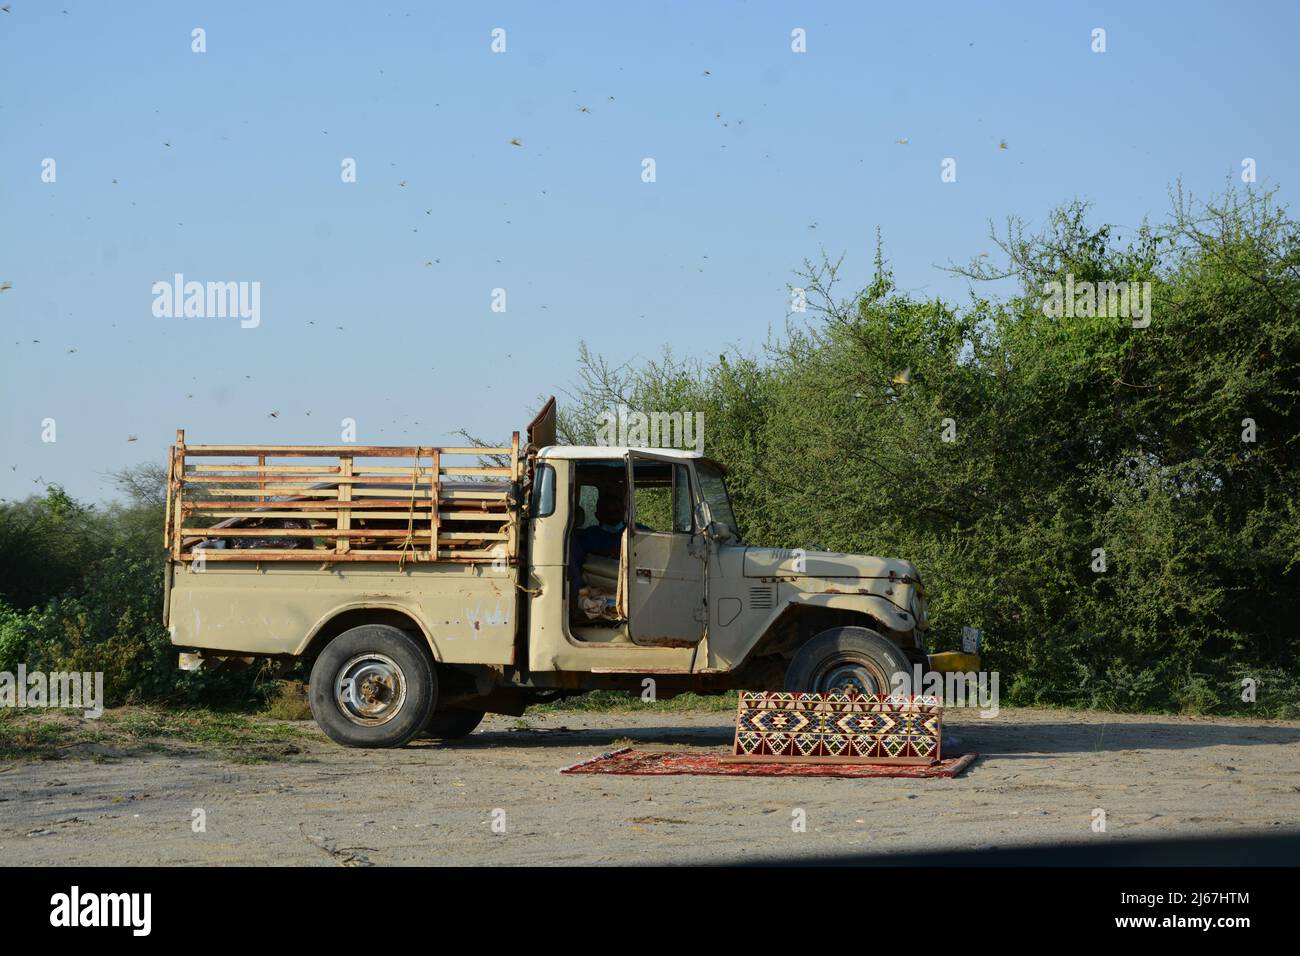 Viejo Toyota Landcruser mientras que el viaje en Arabia Saudita occidental Vally de Hali Foto de stock